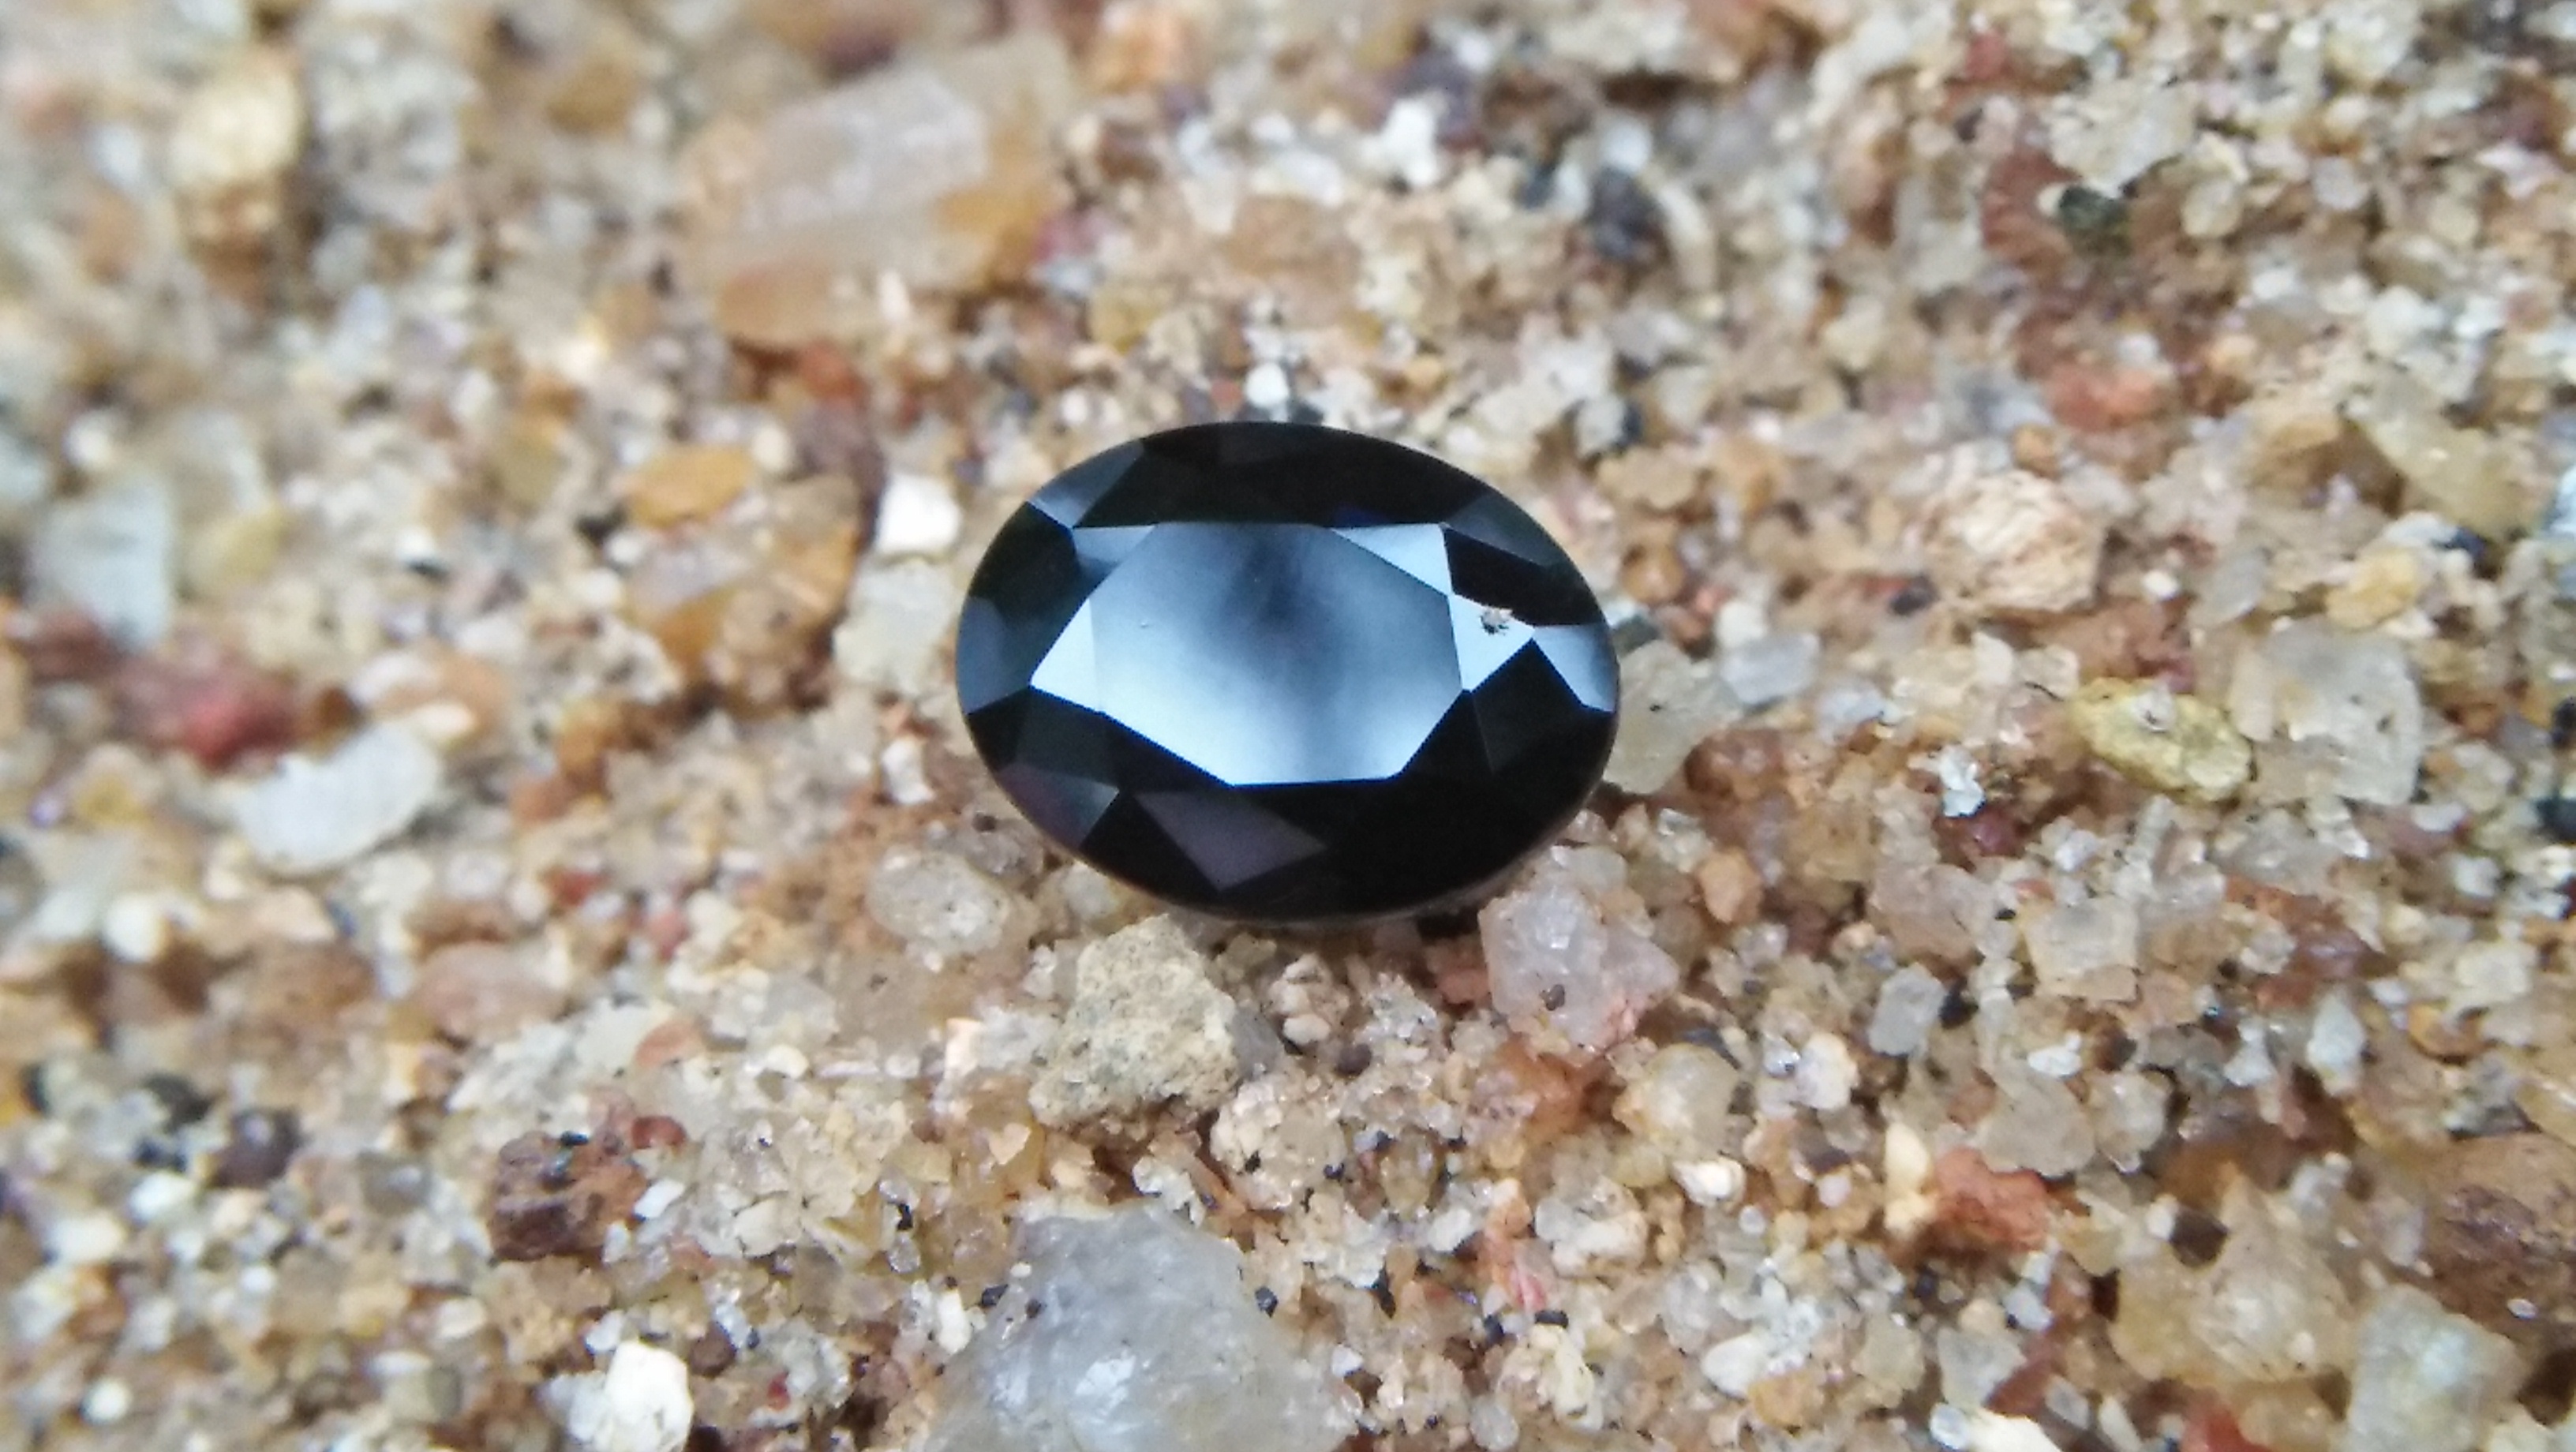 Natural Dark Blue Sapphire ( Kakanil ) කාකනිල් සෙනසුරු ග්‍රහයාට අයත් මැණික/ Stone of Saturn Shape : Ovel Clarity : Clean Treatment : Natural/Unheated Dimension : 7.3mmx 5.3mm x 3.9mm Weight : 1.55Cts Location : City of Gem Ratnapura Sri Lanka